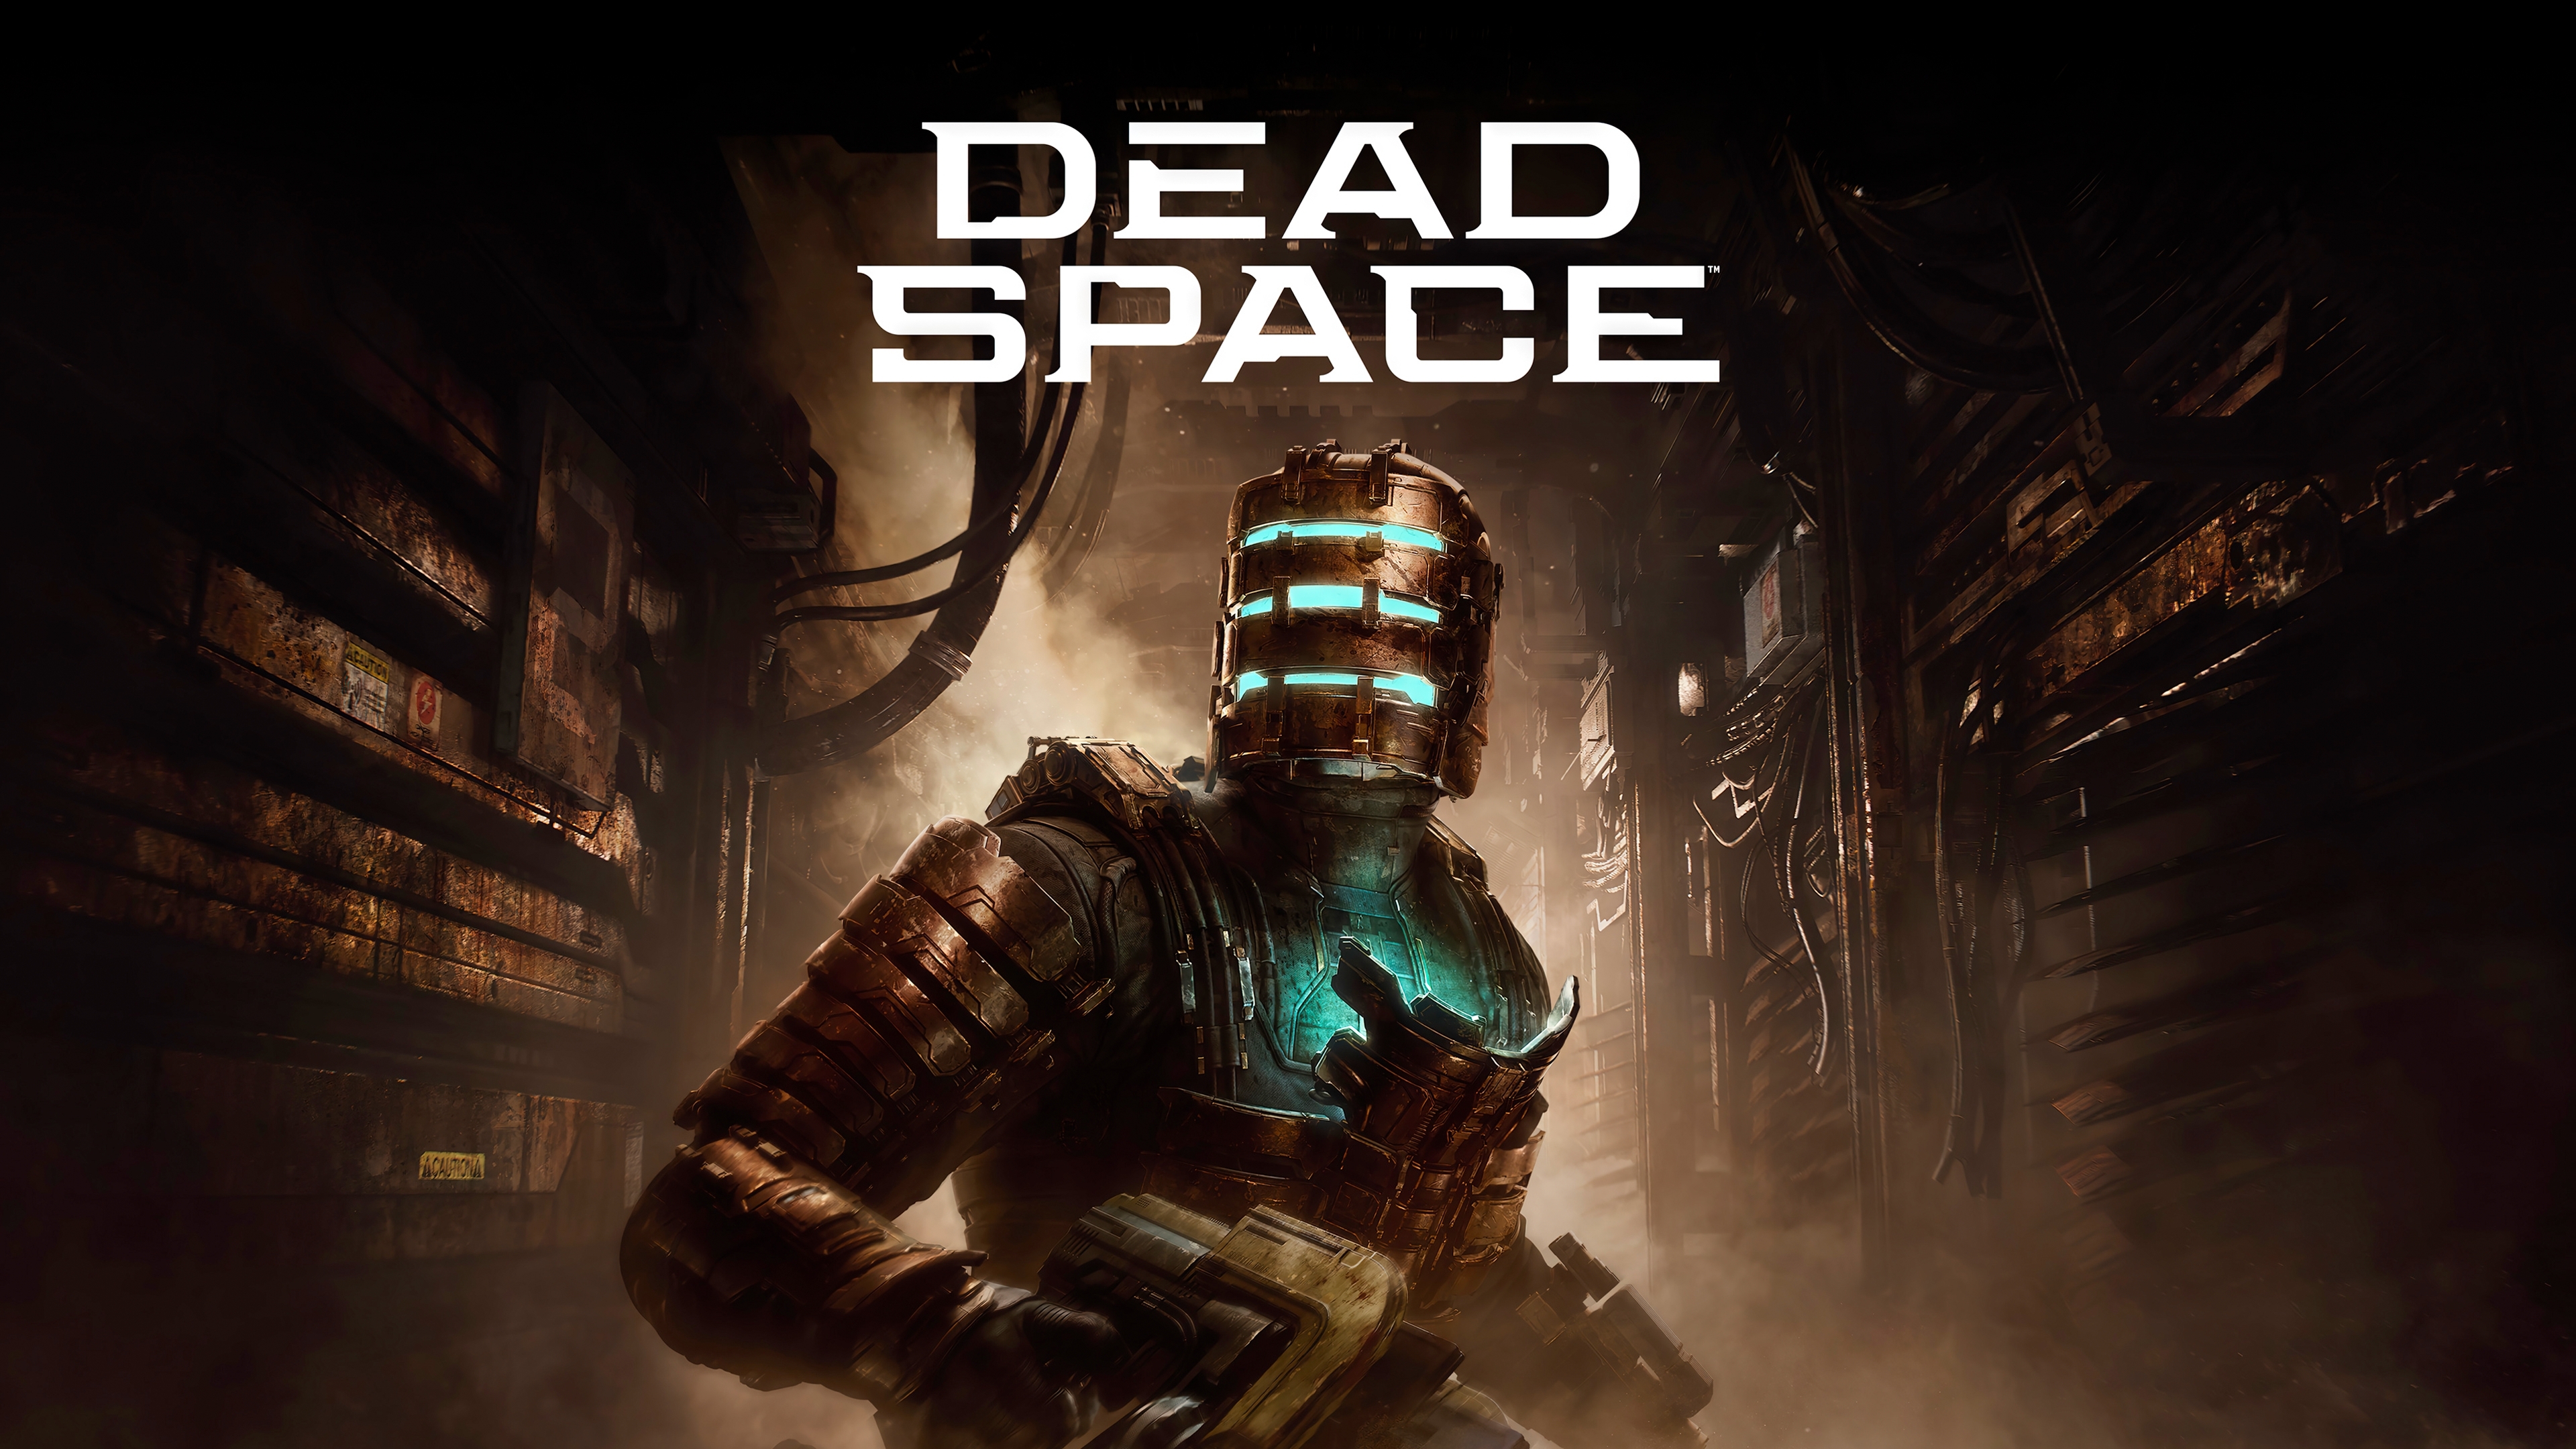 Dead Space Remake DLSS 3 Mod Released by LukeFZ